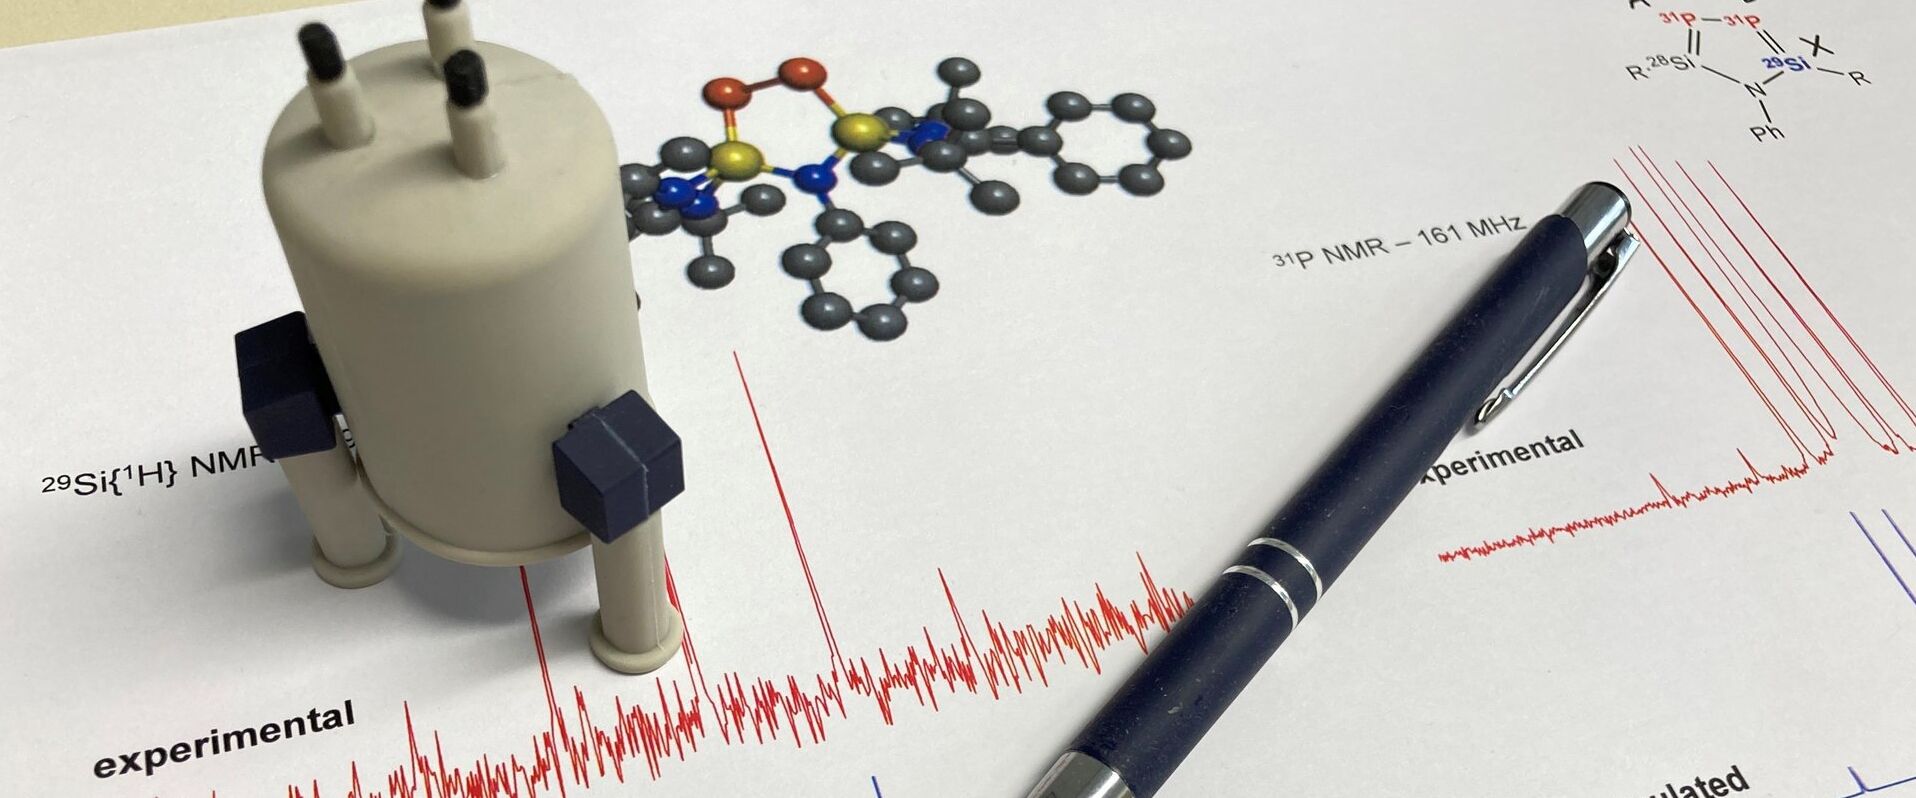 Ein ausgedrucktes NMR-Spektrum mit Molekülstruktur, darauf ein Stift und Miniatur NMR-Gerät